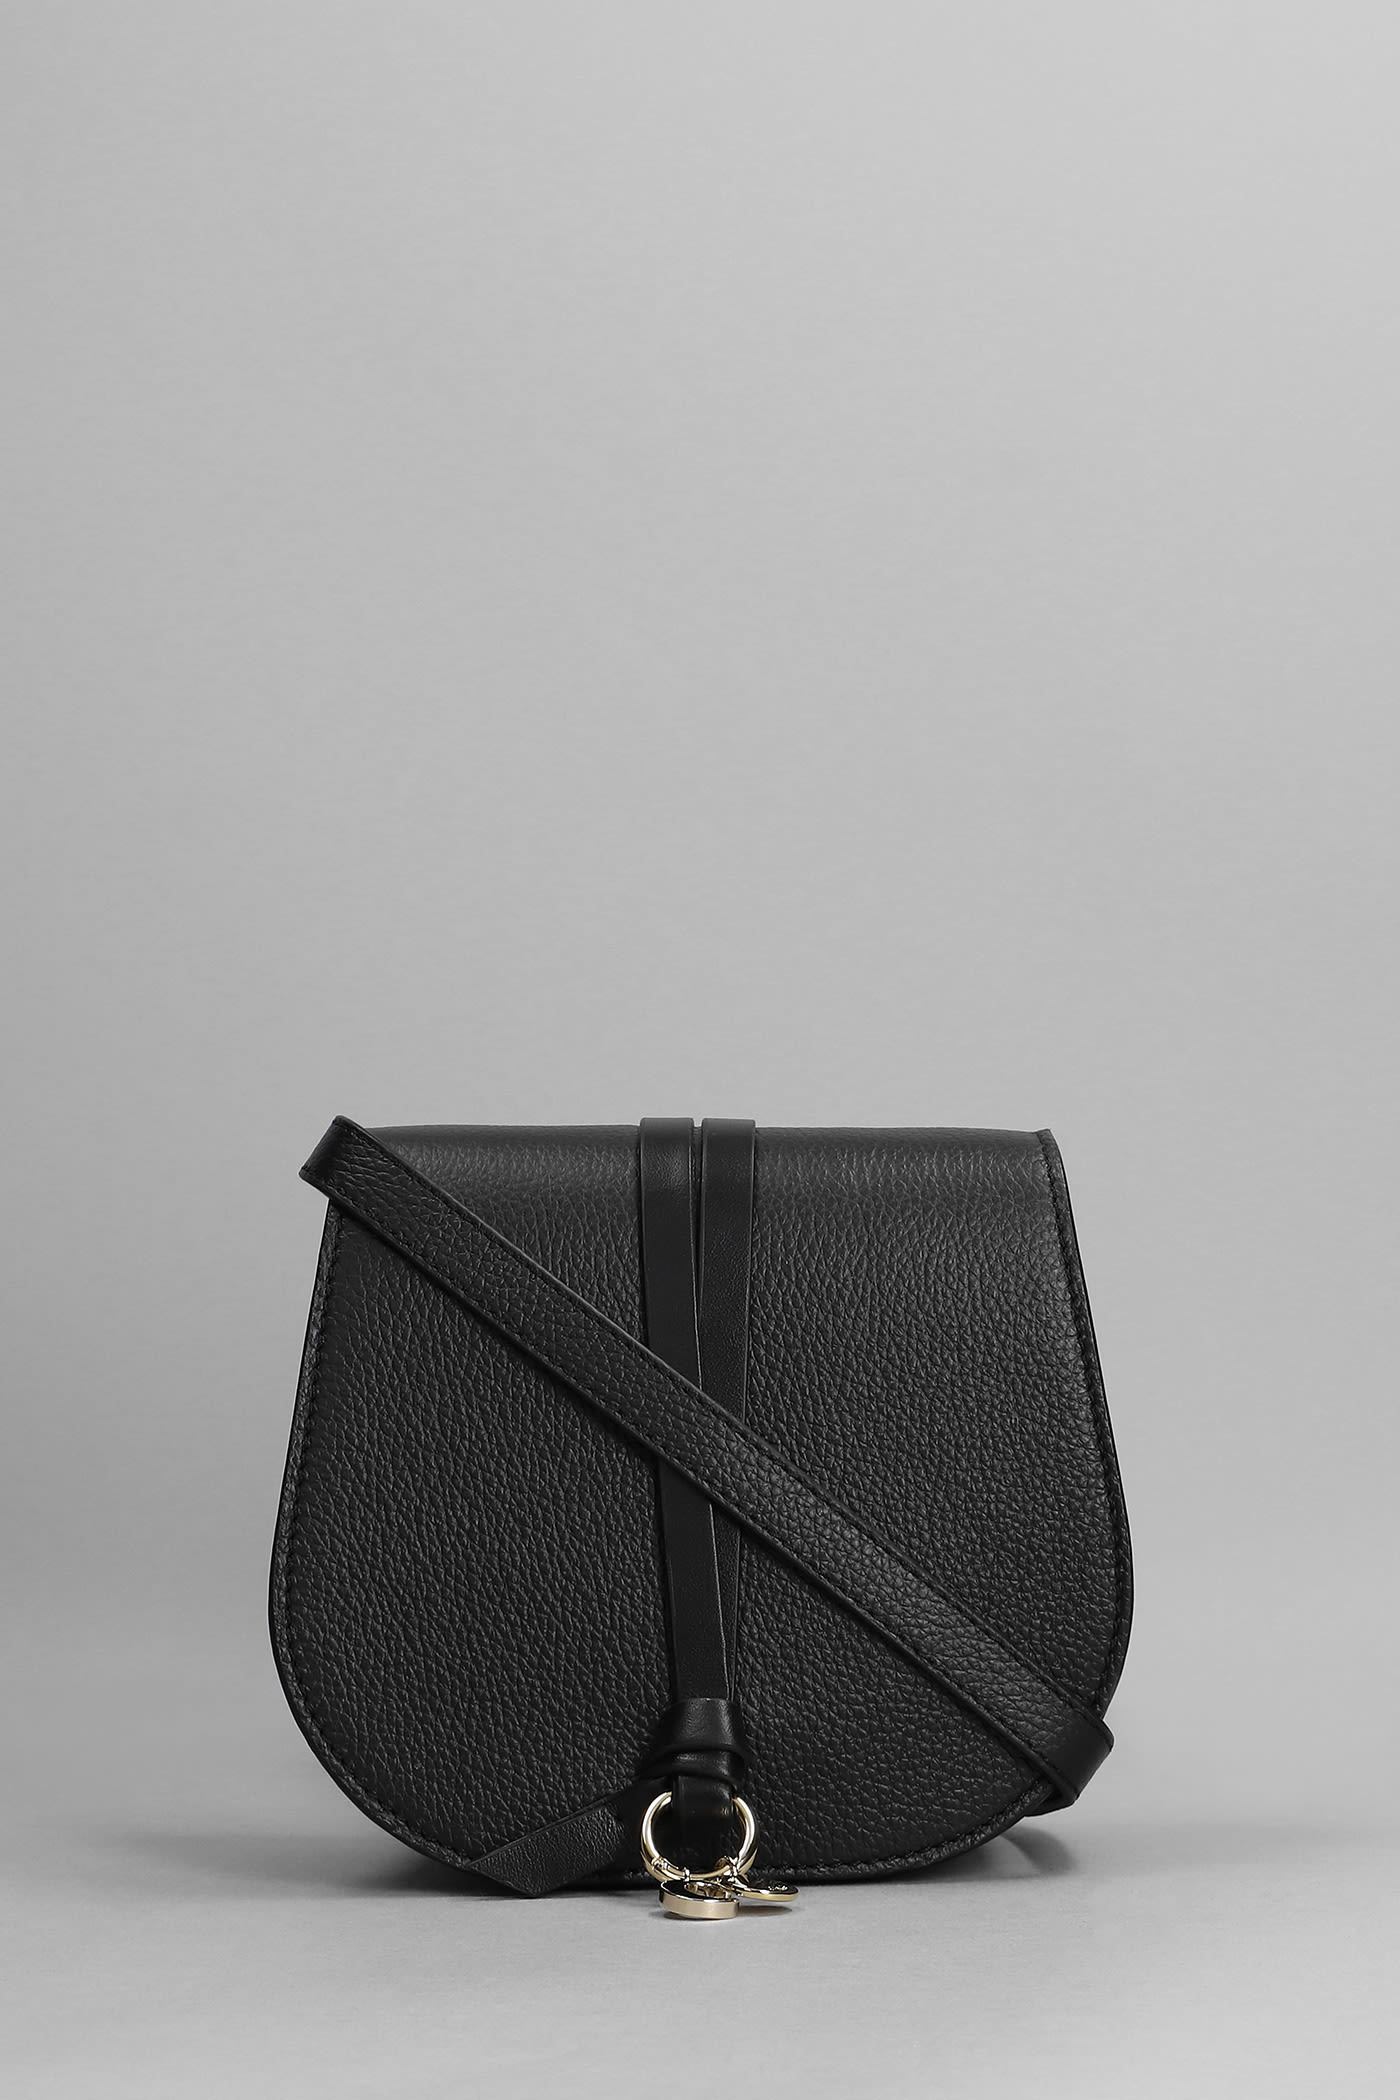 Chloé Alphabet Shoulder Bag In Black Leather